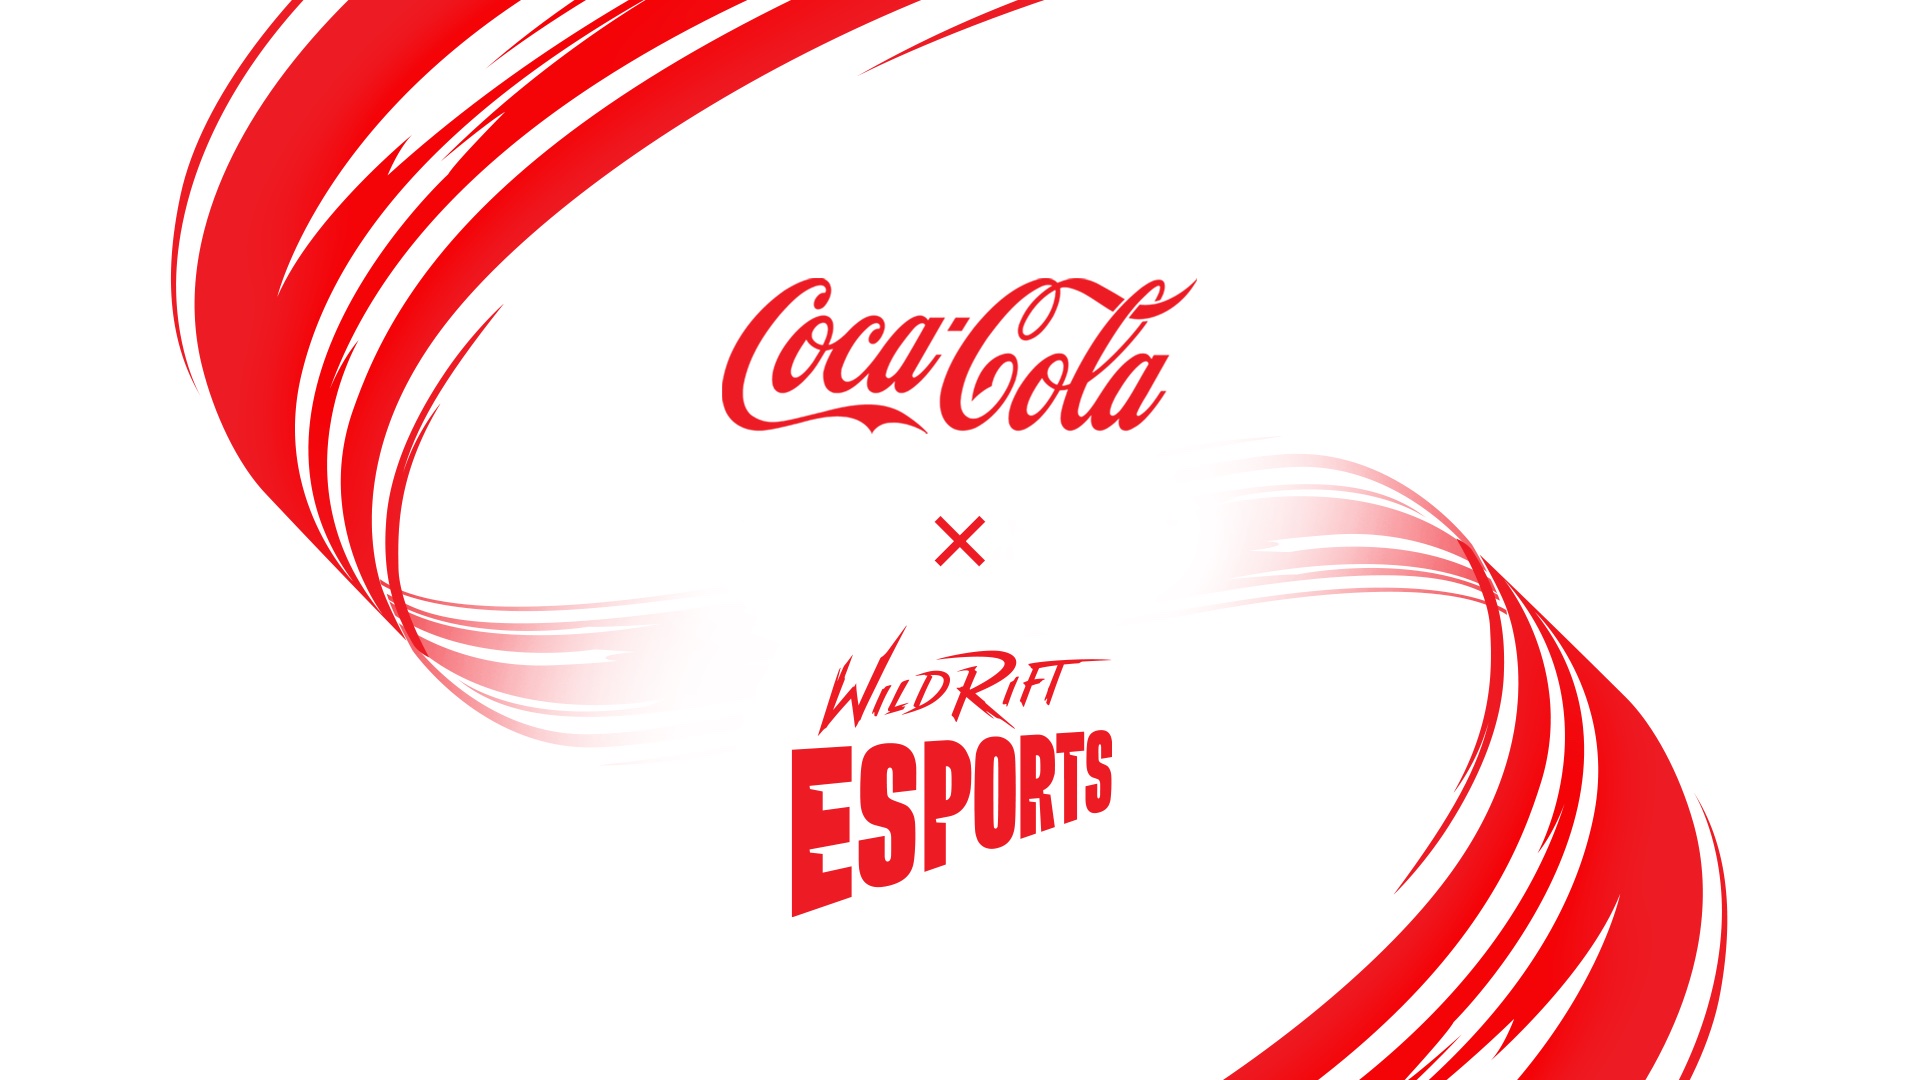 Coca-Cola wird globaler Partner von Wild Rift Esports